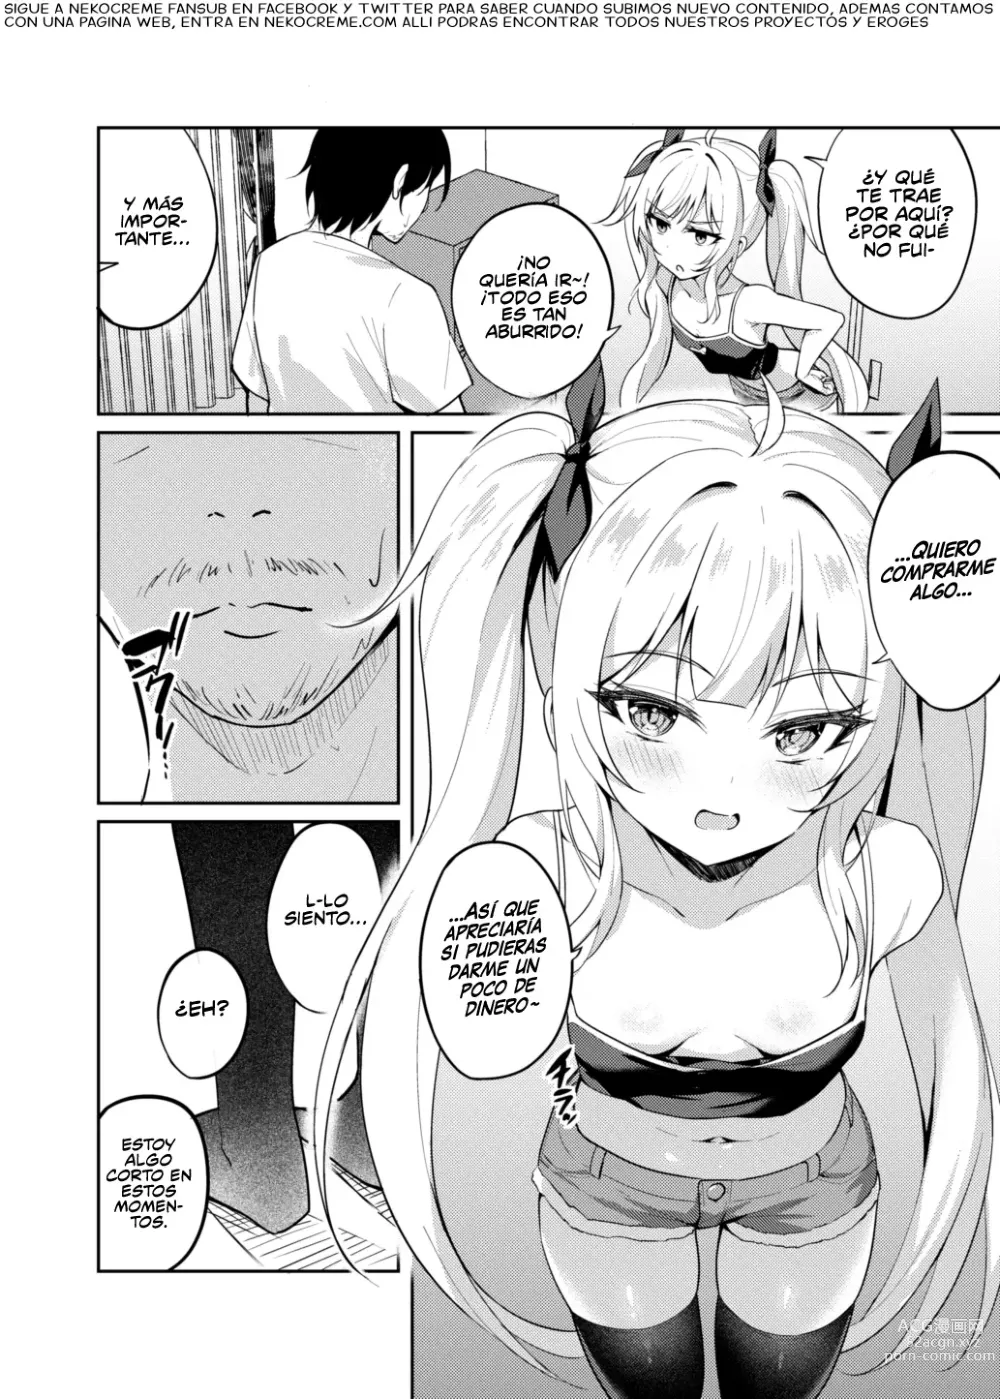 Page 5 of doujinshi Hipnotice a la Mocosa Para que Fuera una Puta Obediente